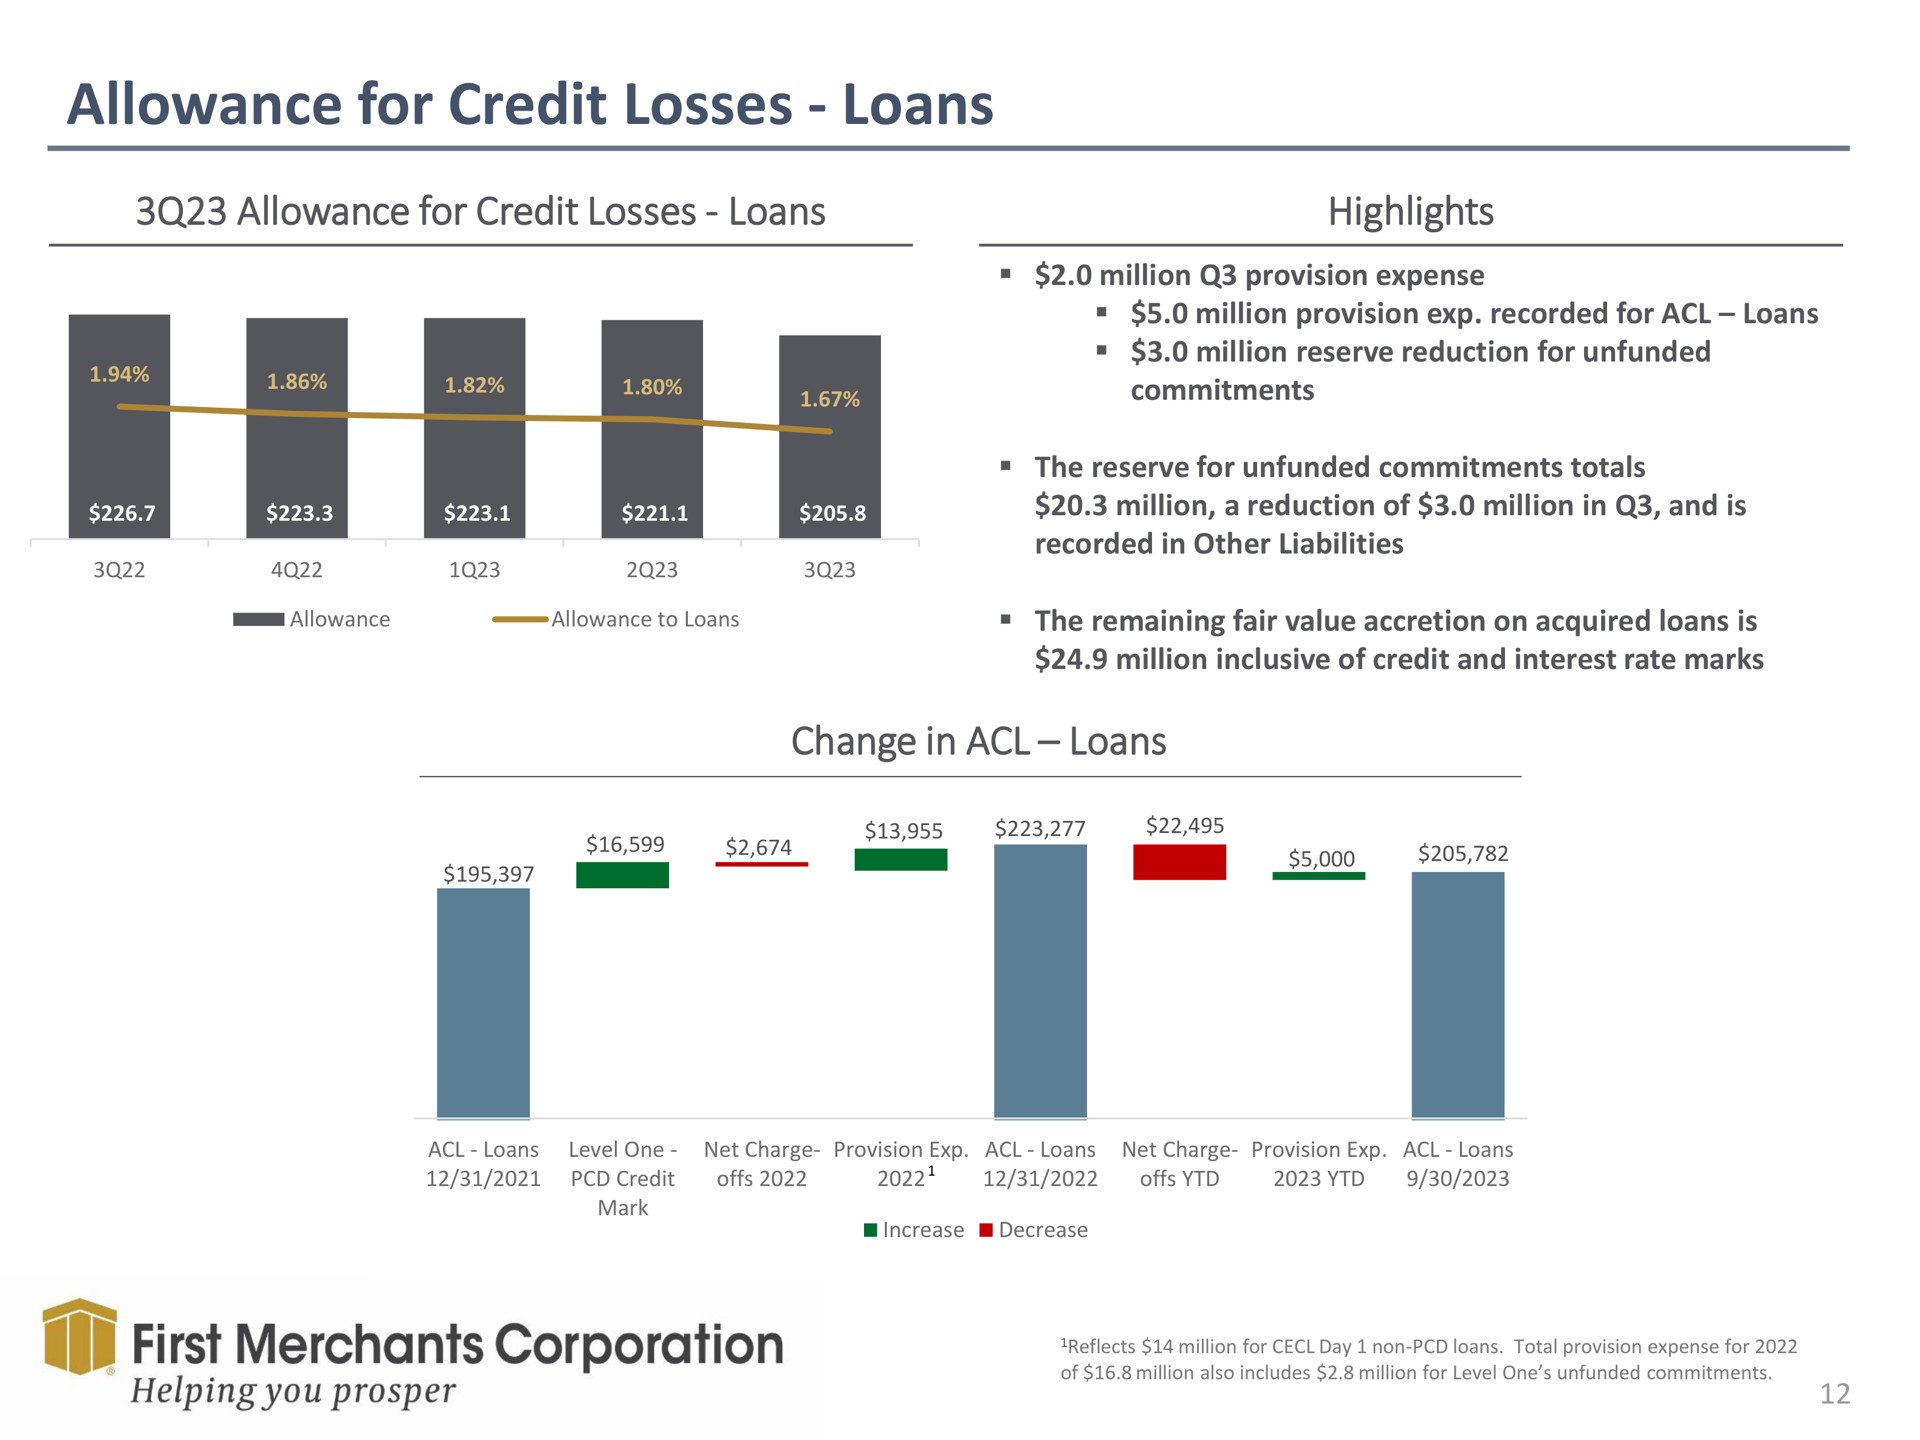 allowance for credit losses loans allowance for credit losses loans highlights change in loans first merchants corporation | First Merchants